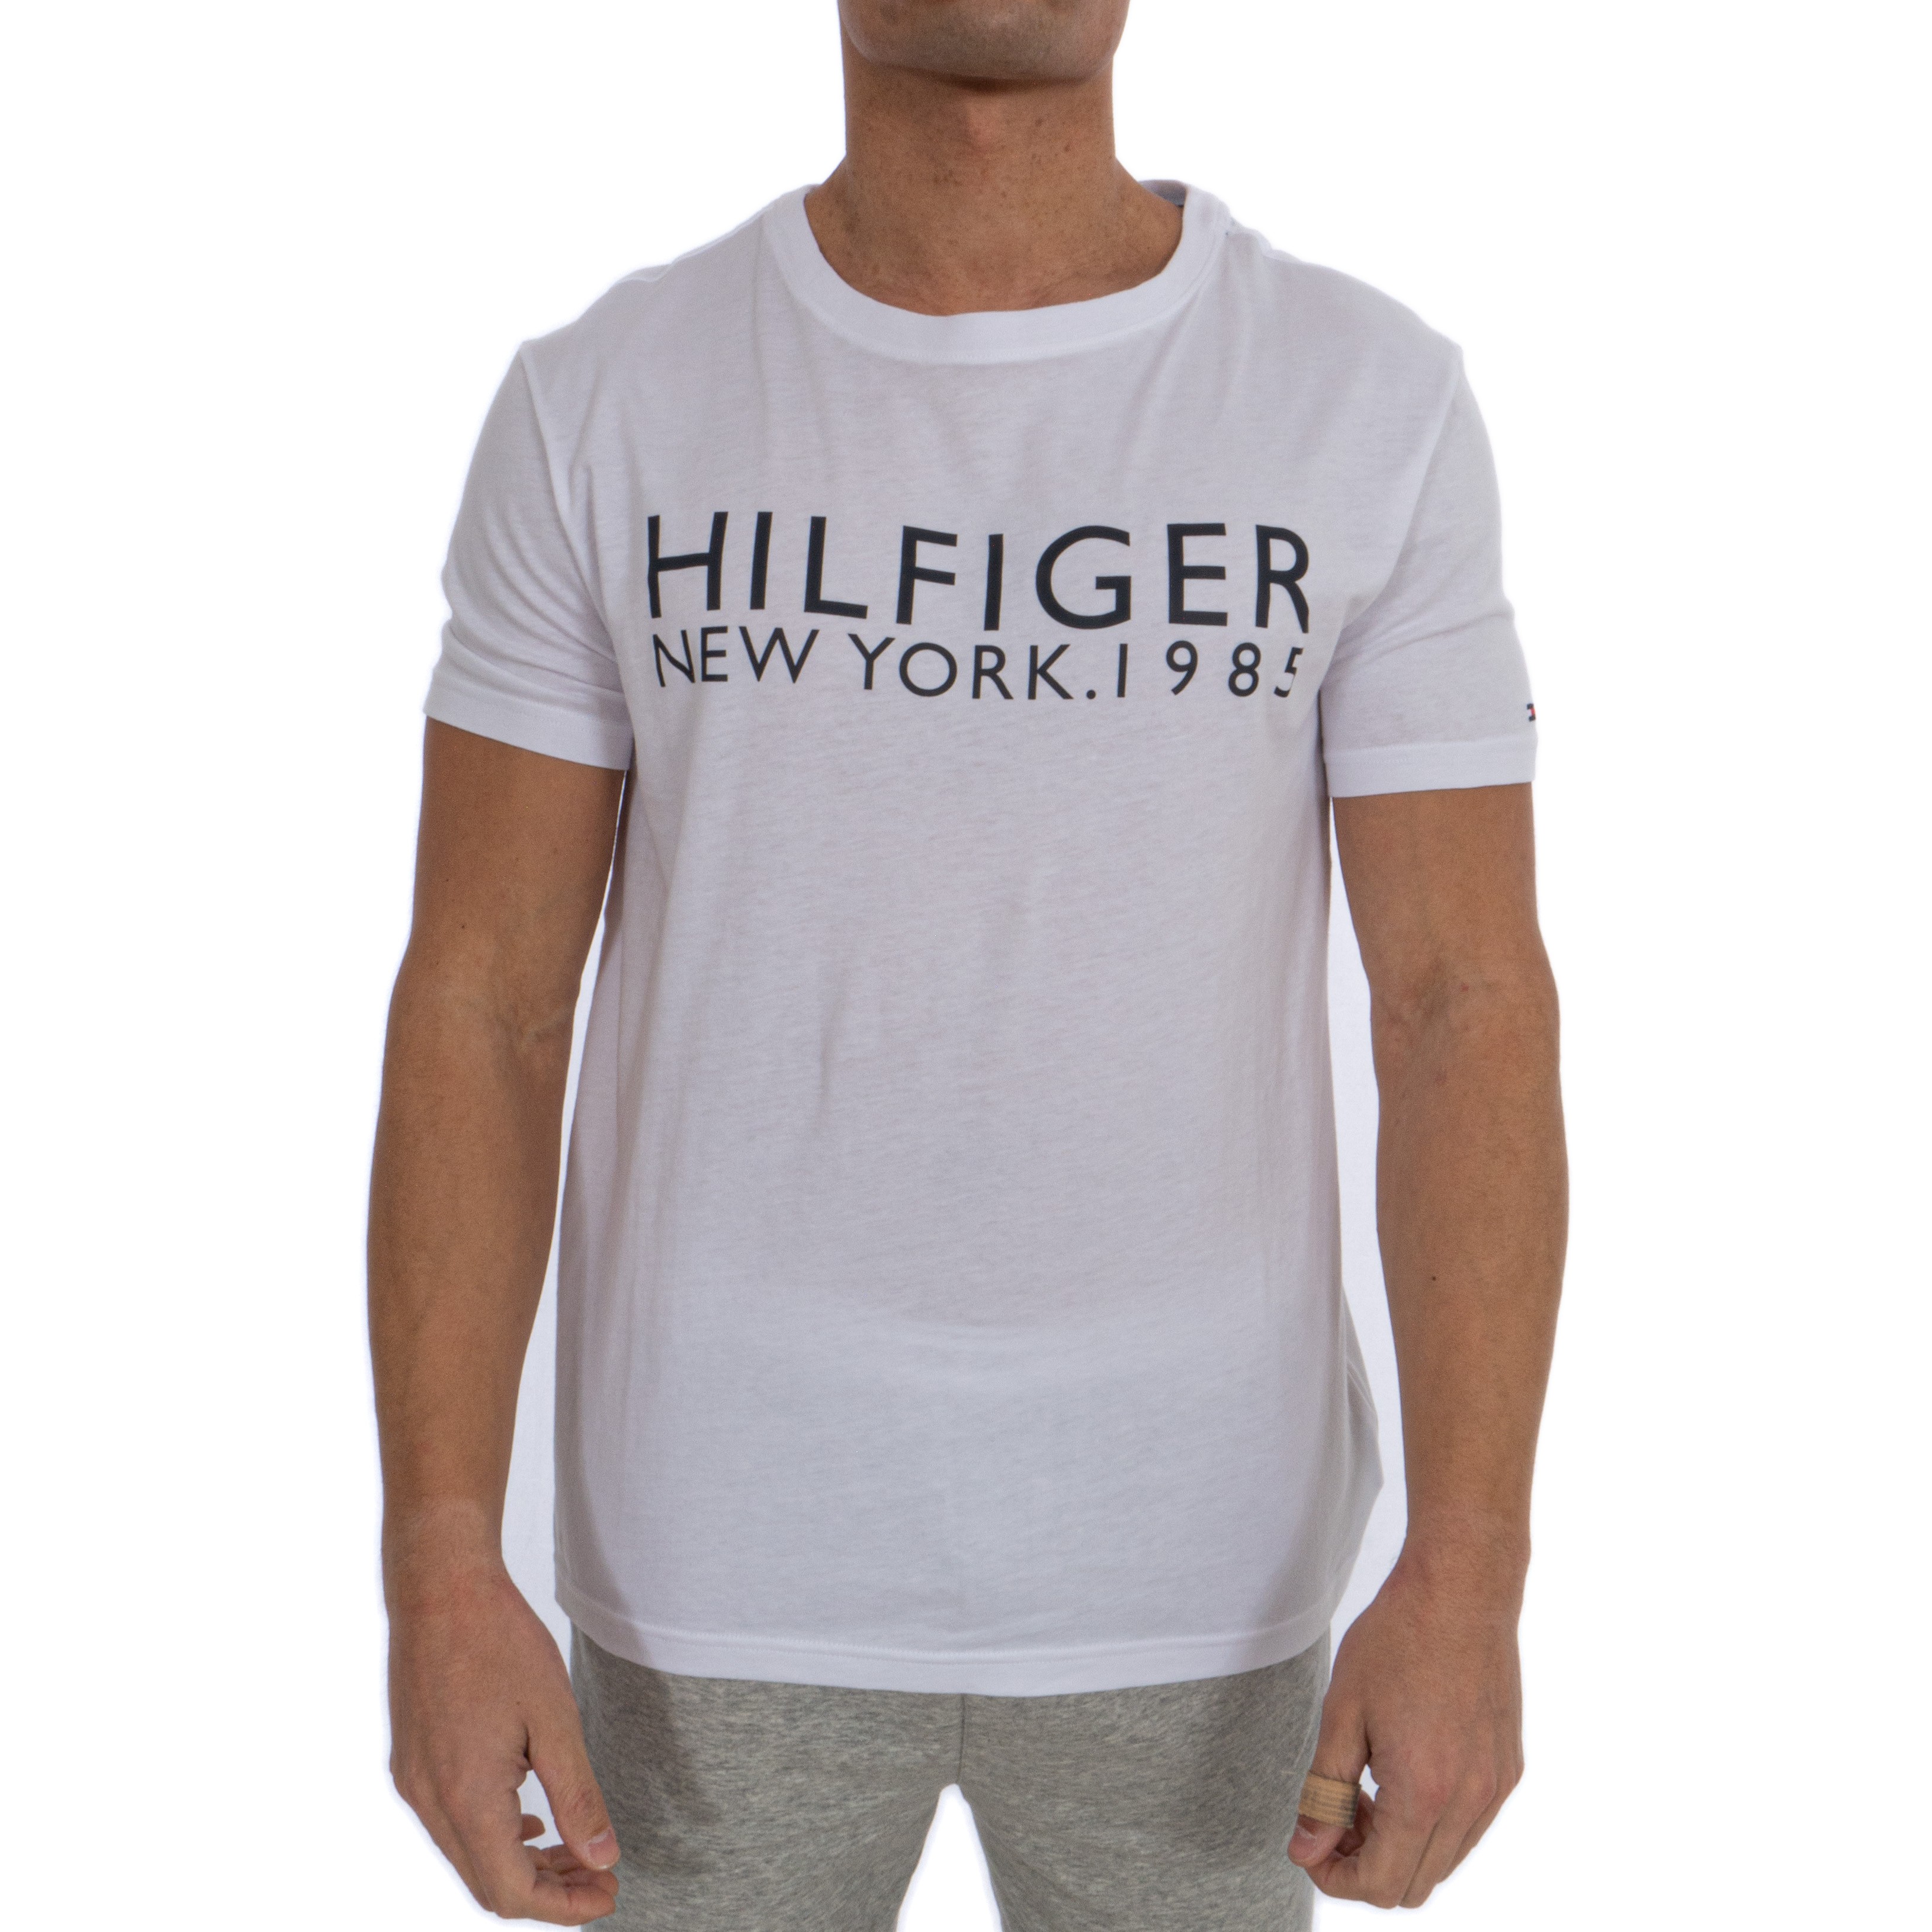 hilfiger 1985 t shirt